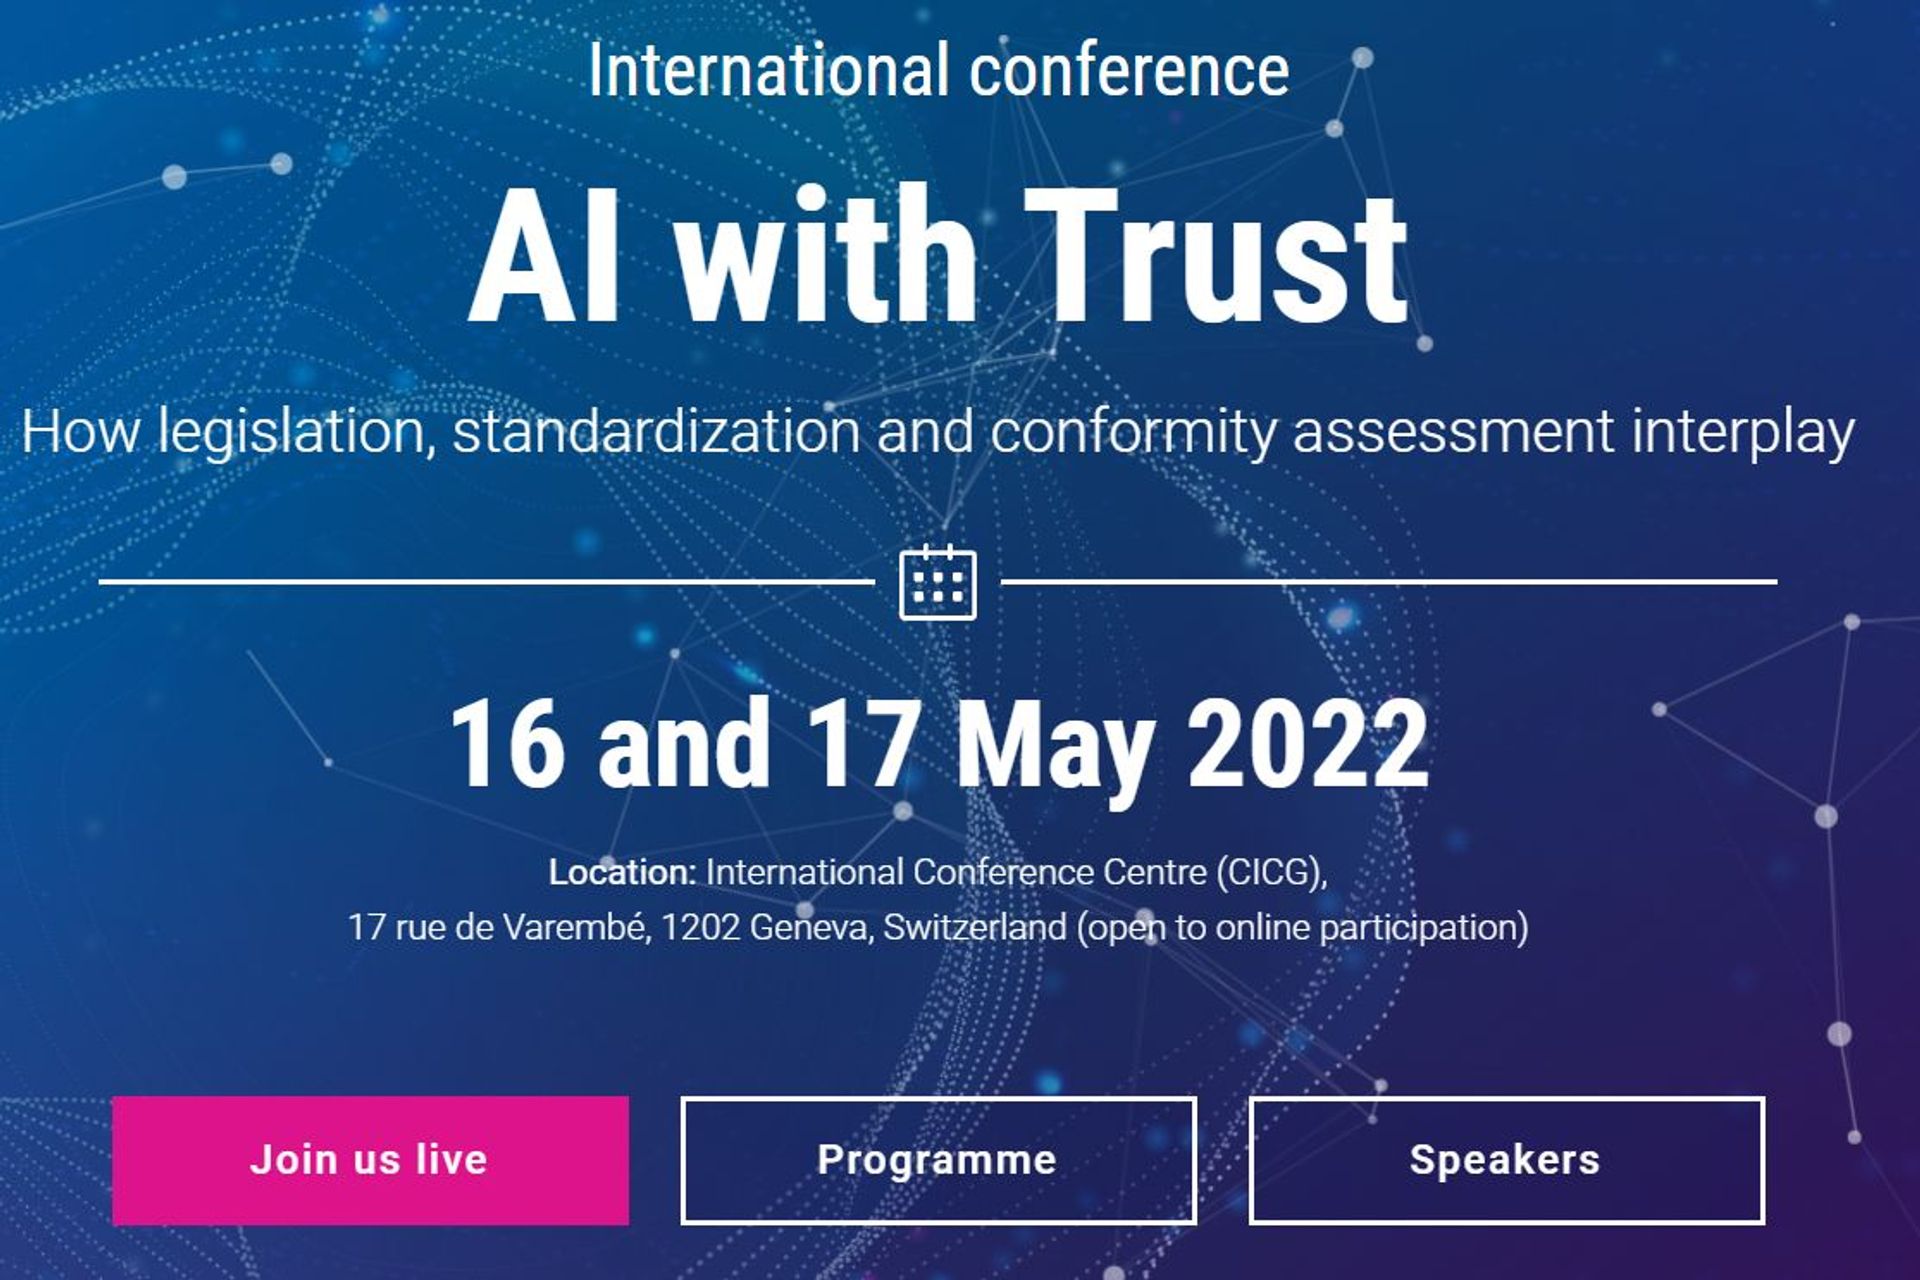 La locandina ufficiale della manifestazione "AI with trust" di Ginevra del 16 e 17 maggio 2022